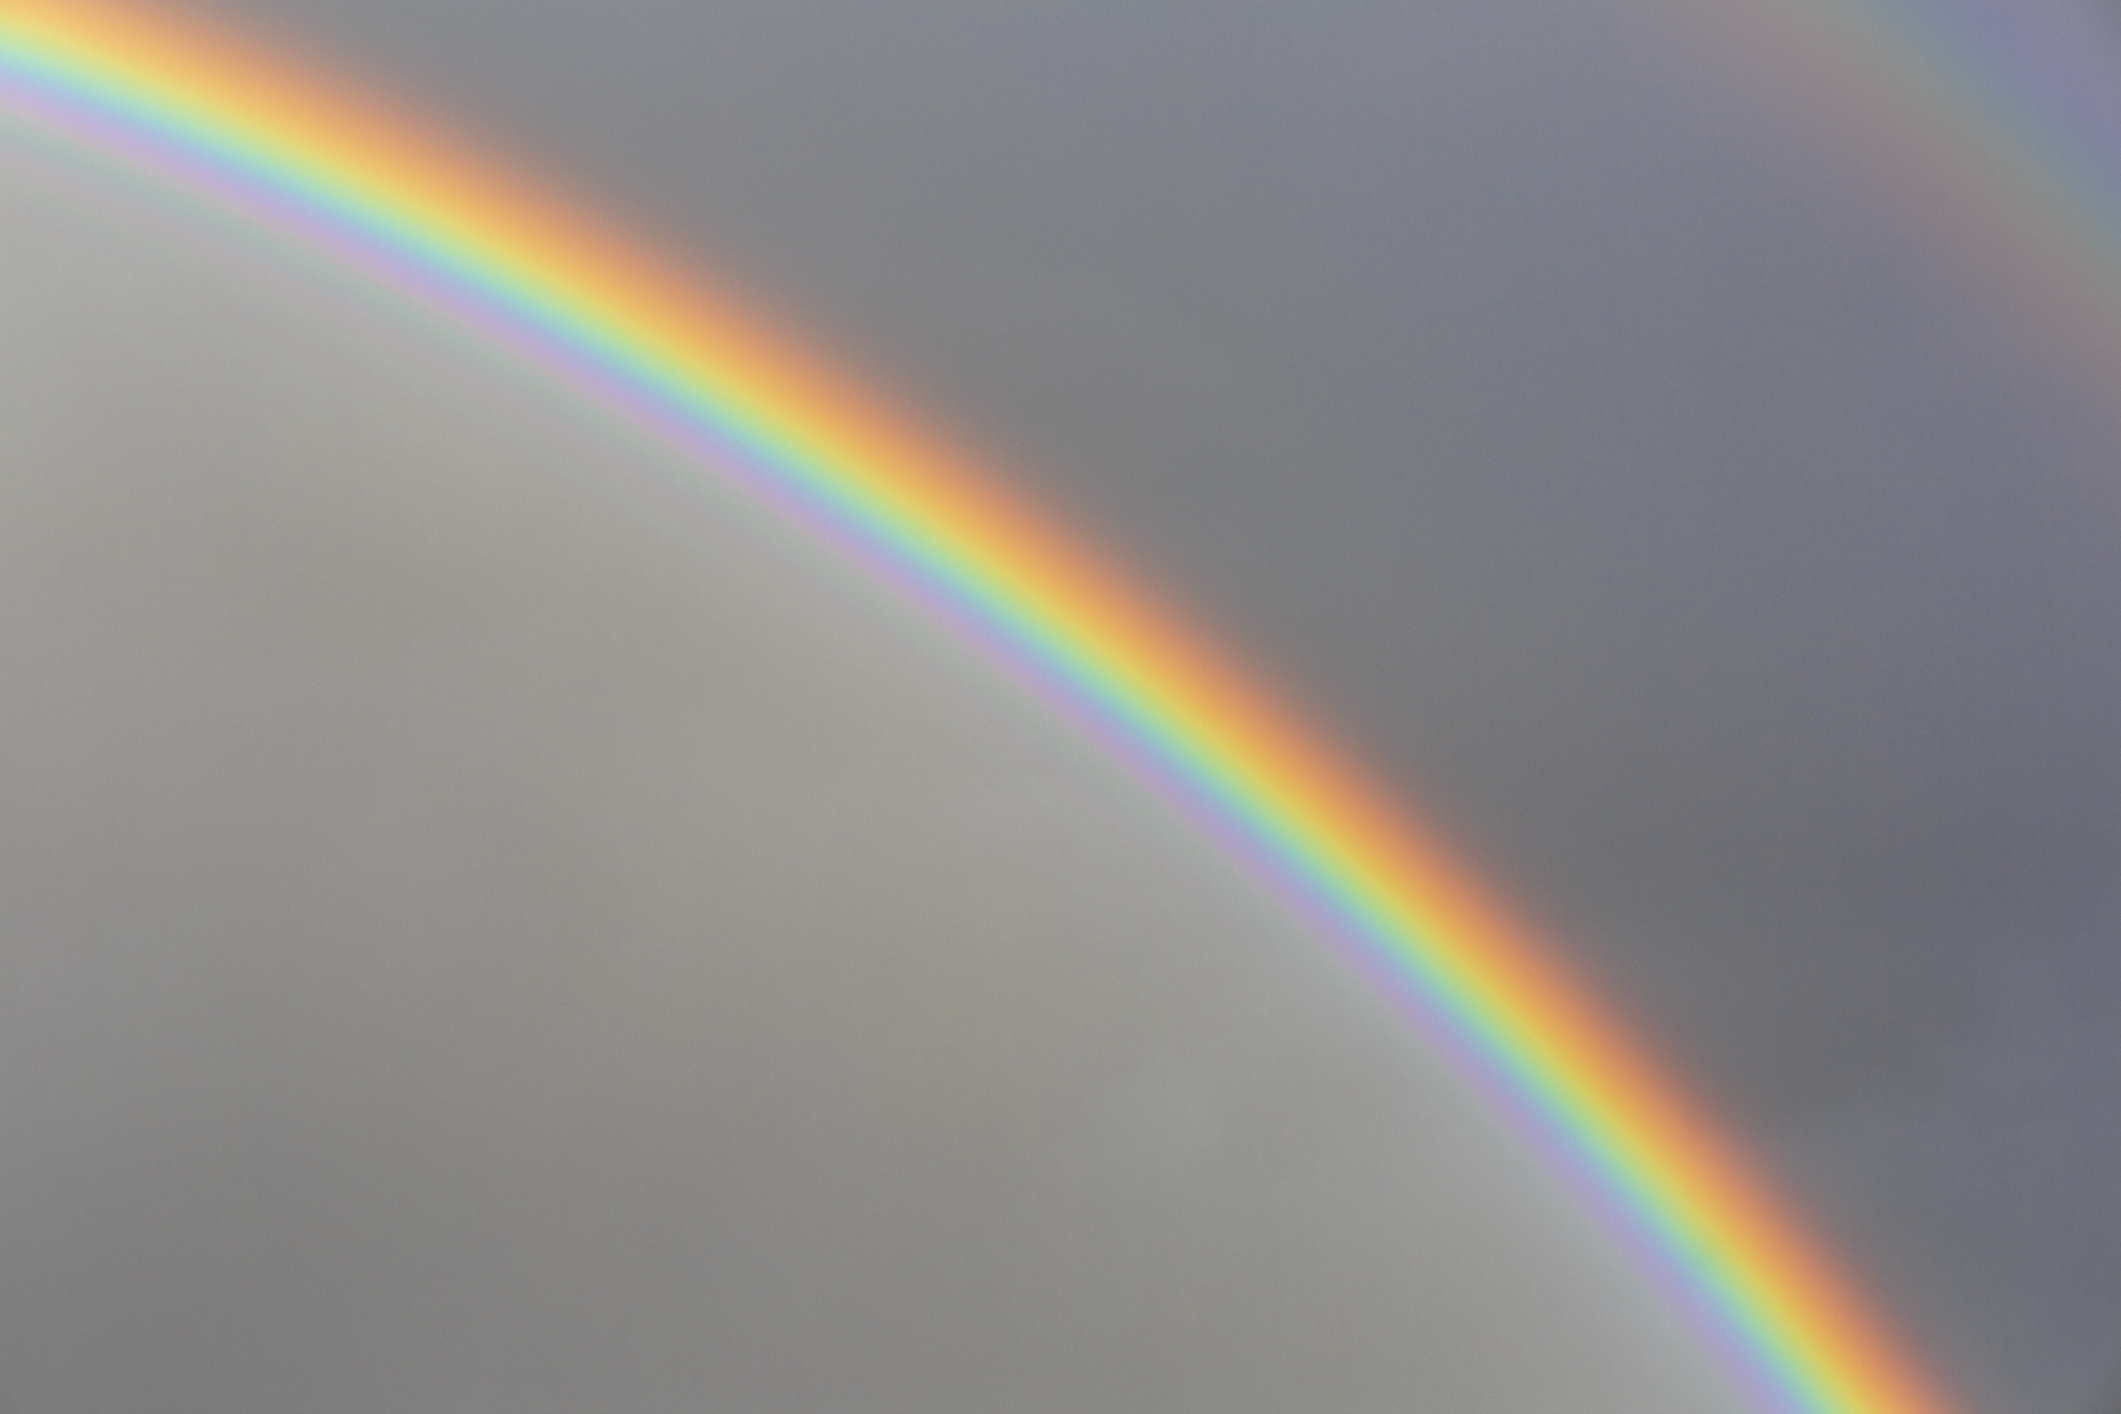 a rainbow